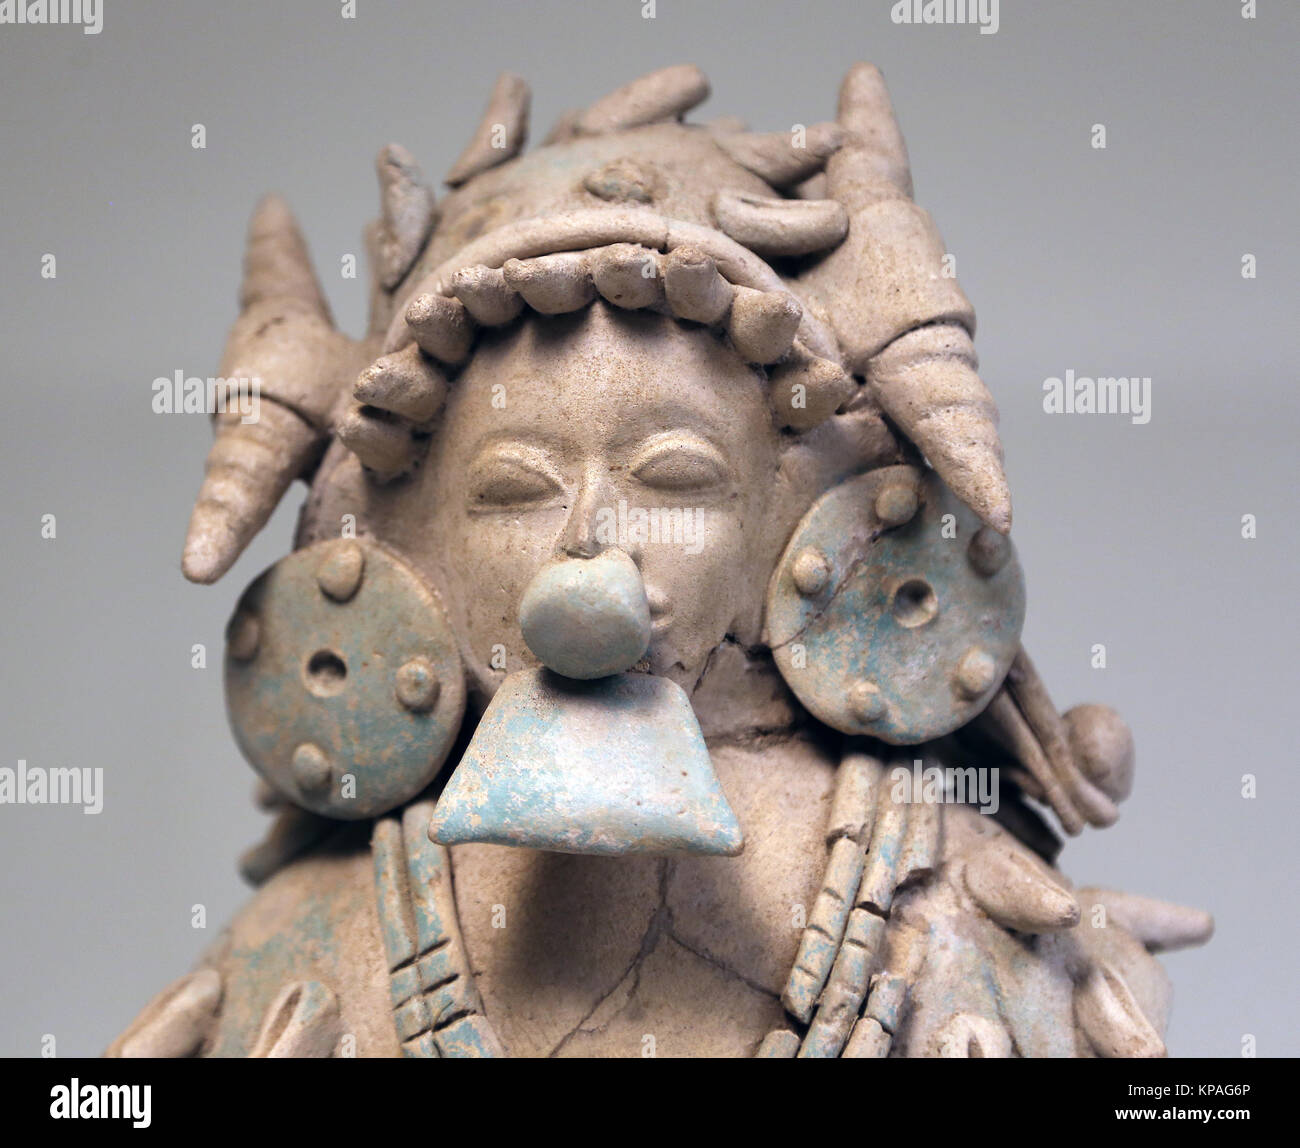 Jama-Coaque culture. Ecuador 535 BC- 400 AD. Ceramic masculine figurine. Museum of Cutures of the World.  Spain Stock Photo